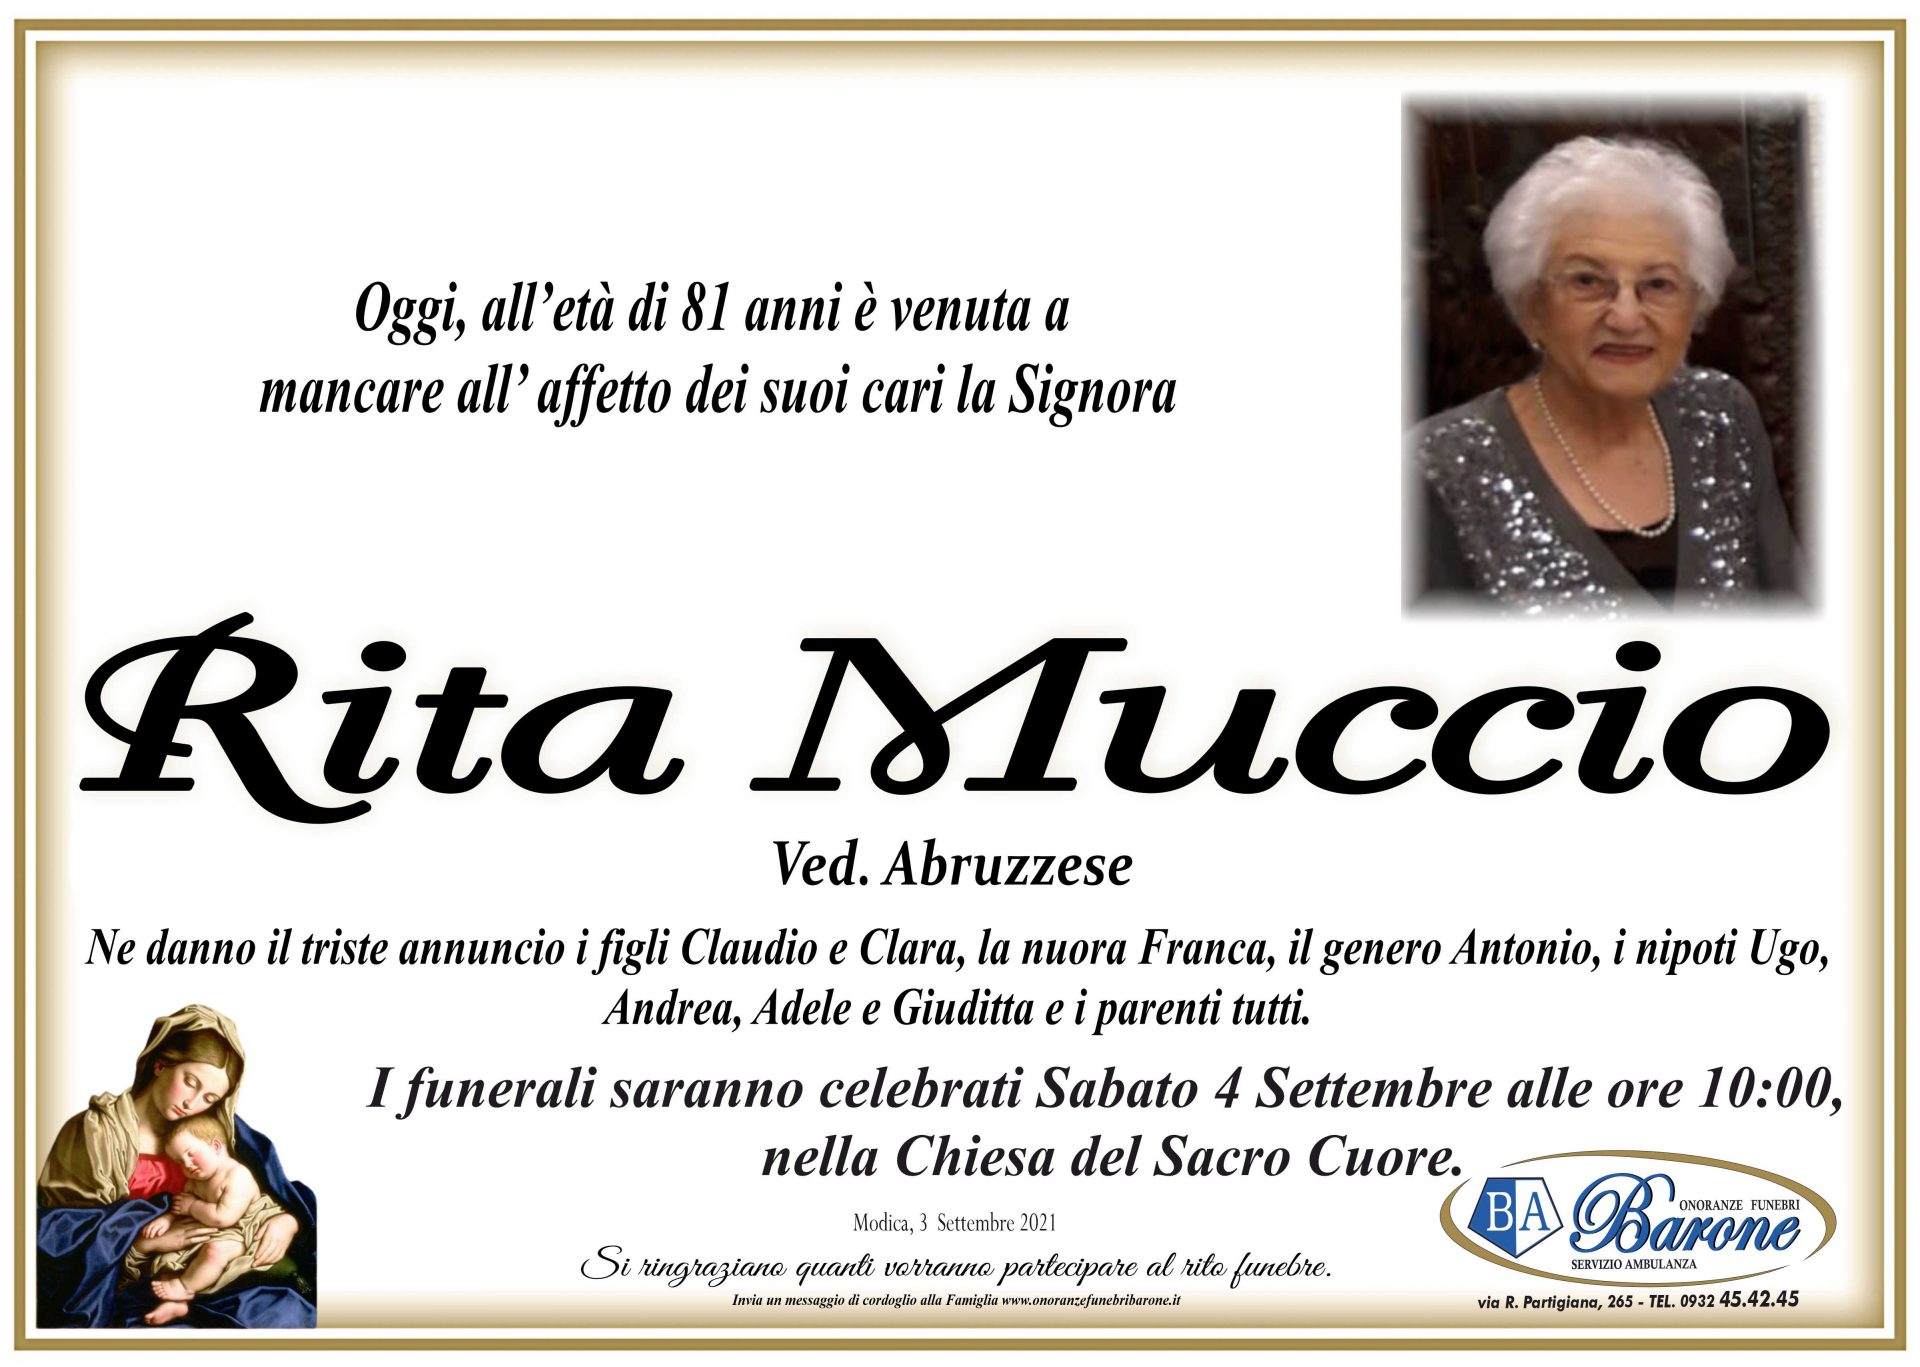 Rita Muccio